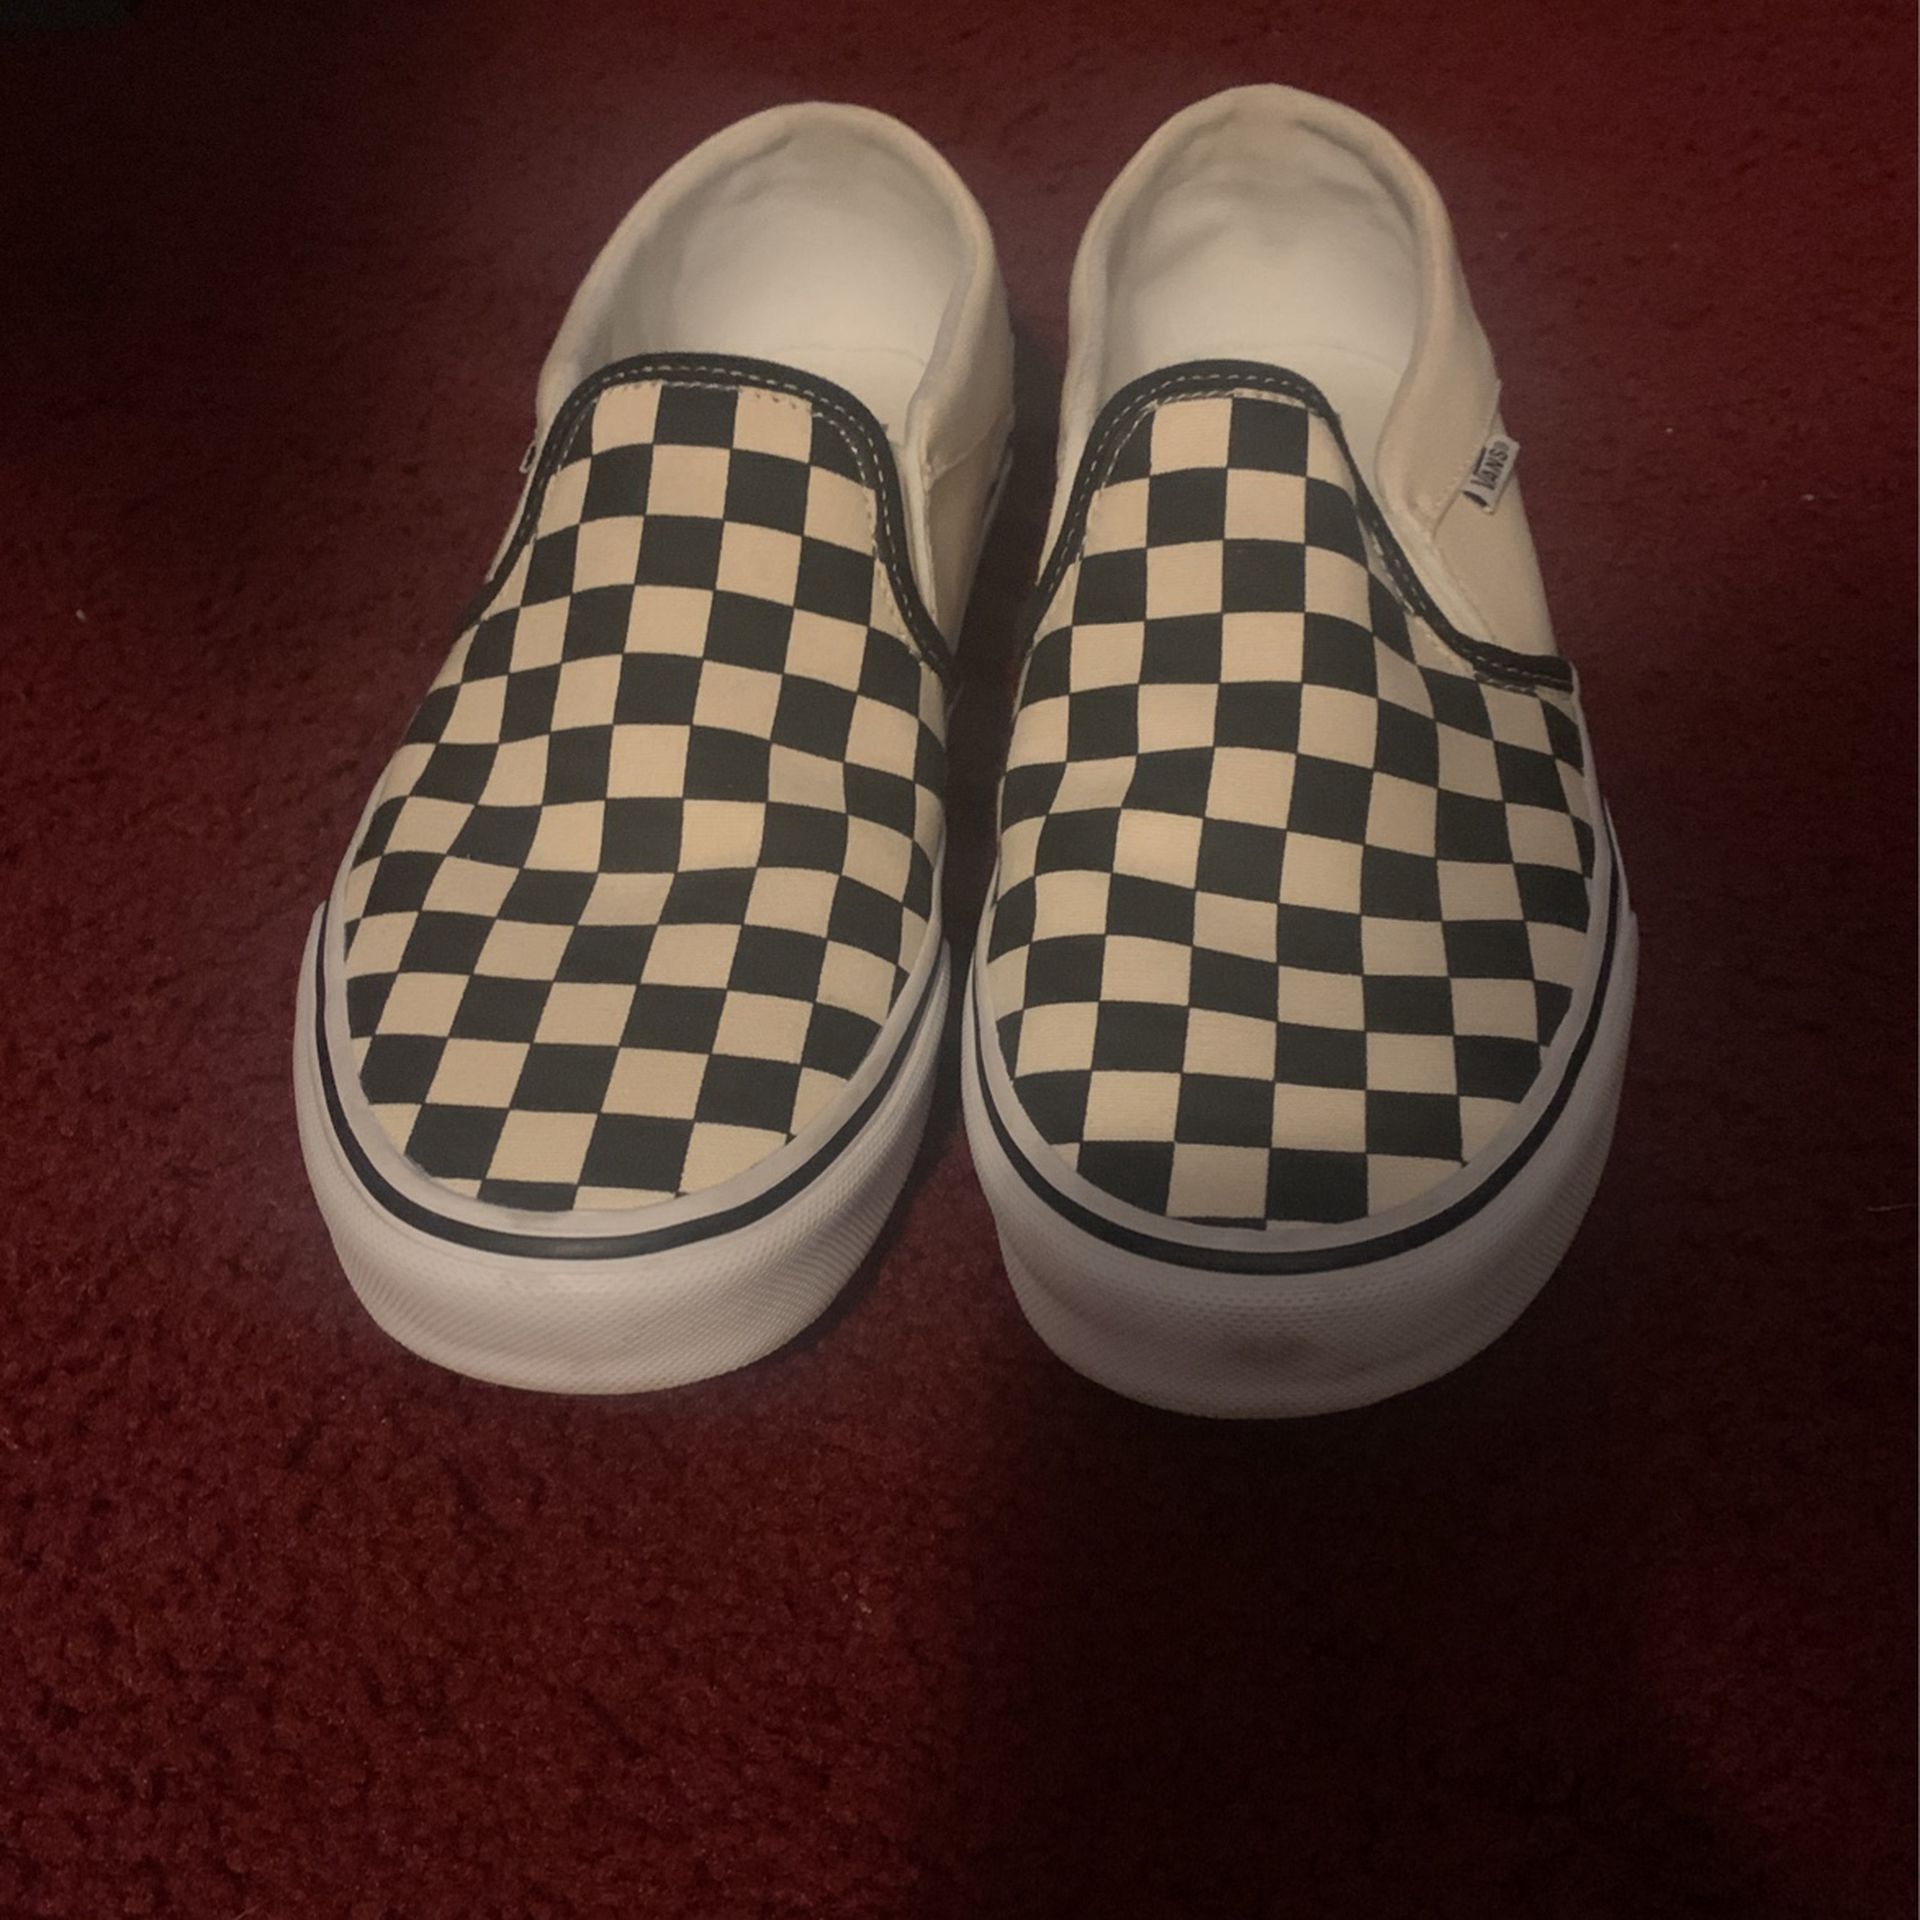 Checkered Slip On Vans 